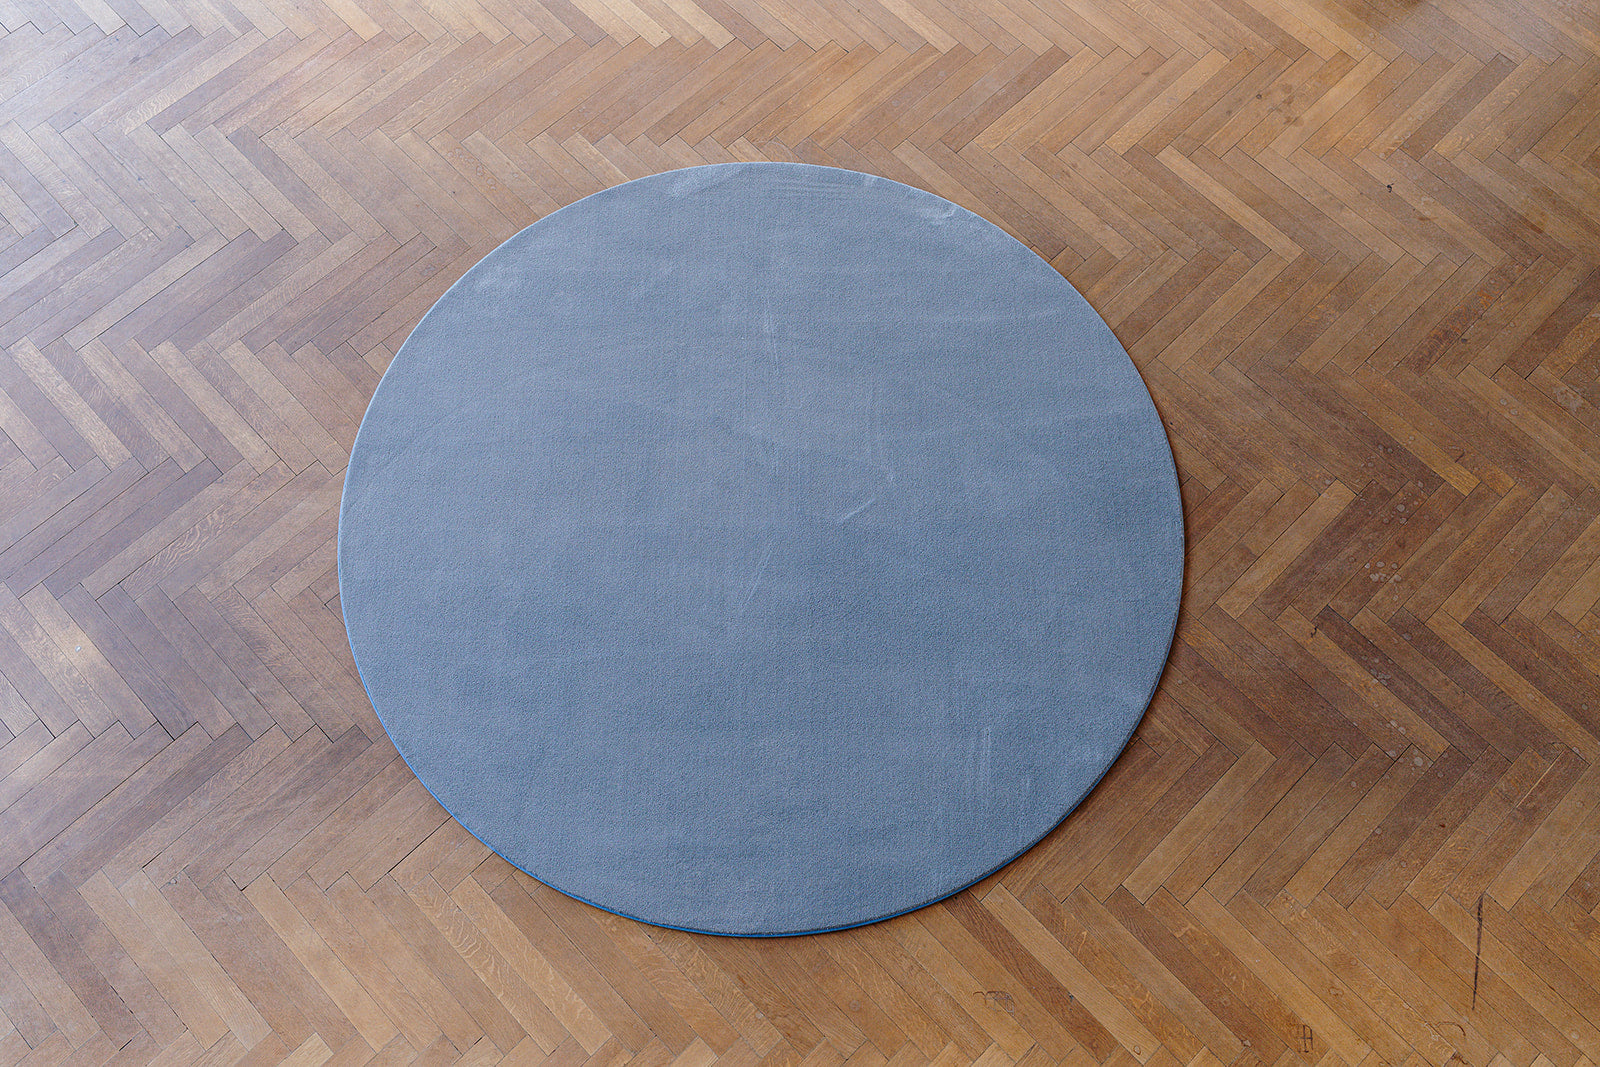 Topshot rond grijs (stone) ecologisch tapijt op parket vloer.